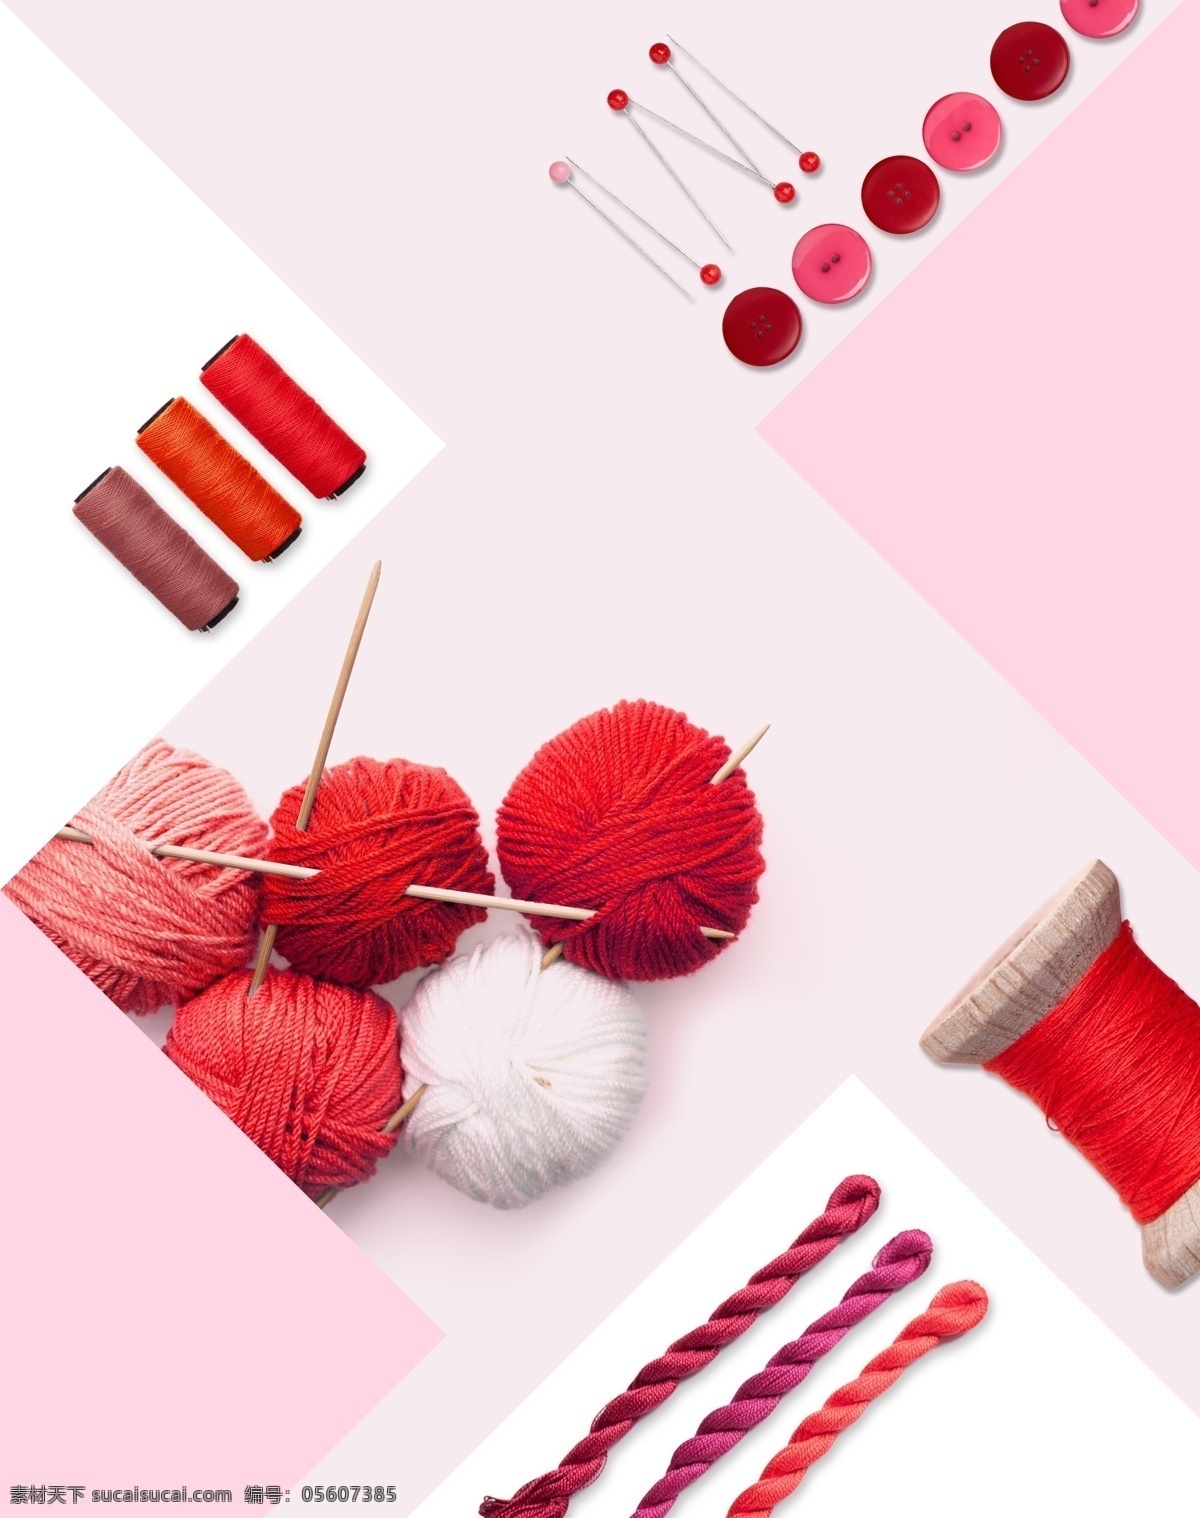 彩色 毛线 球 办公 模板 红色 绳子 海报模板 创意海报 针线 针 缝衣针 毛线图 毛线海报 撞色系素材